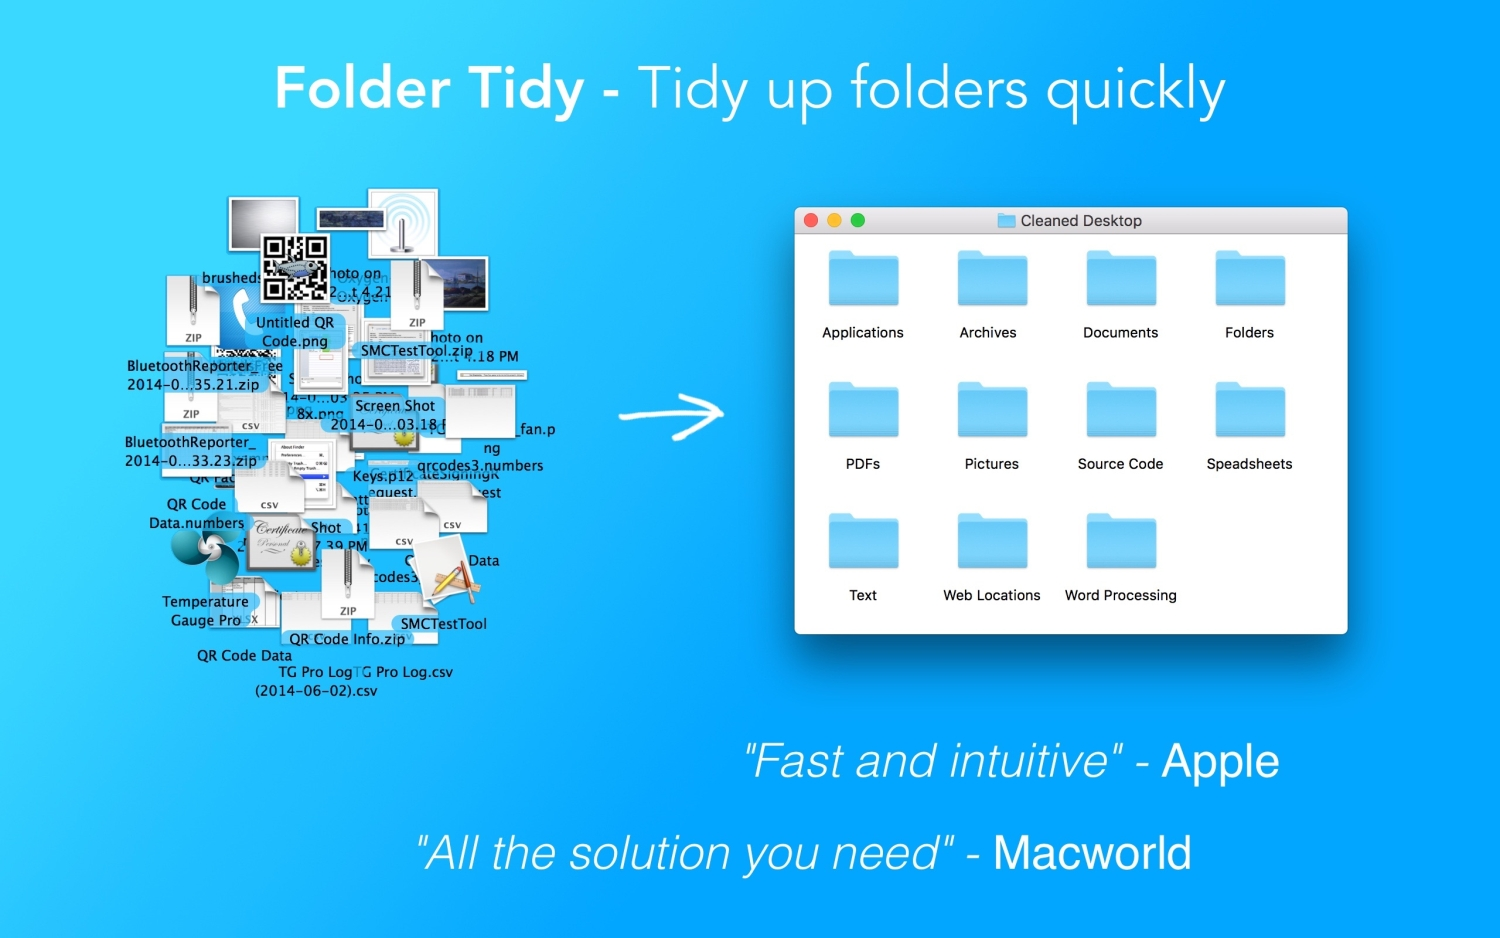 Un'immagine promozionale per l'app Mac Folder Tidy che mostra le sue capacità.